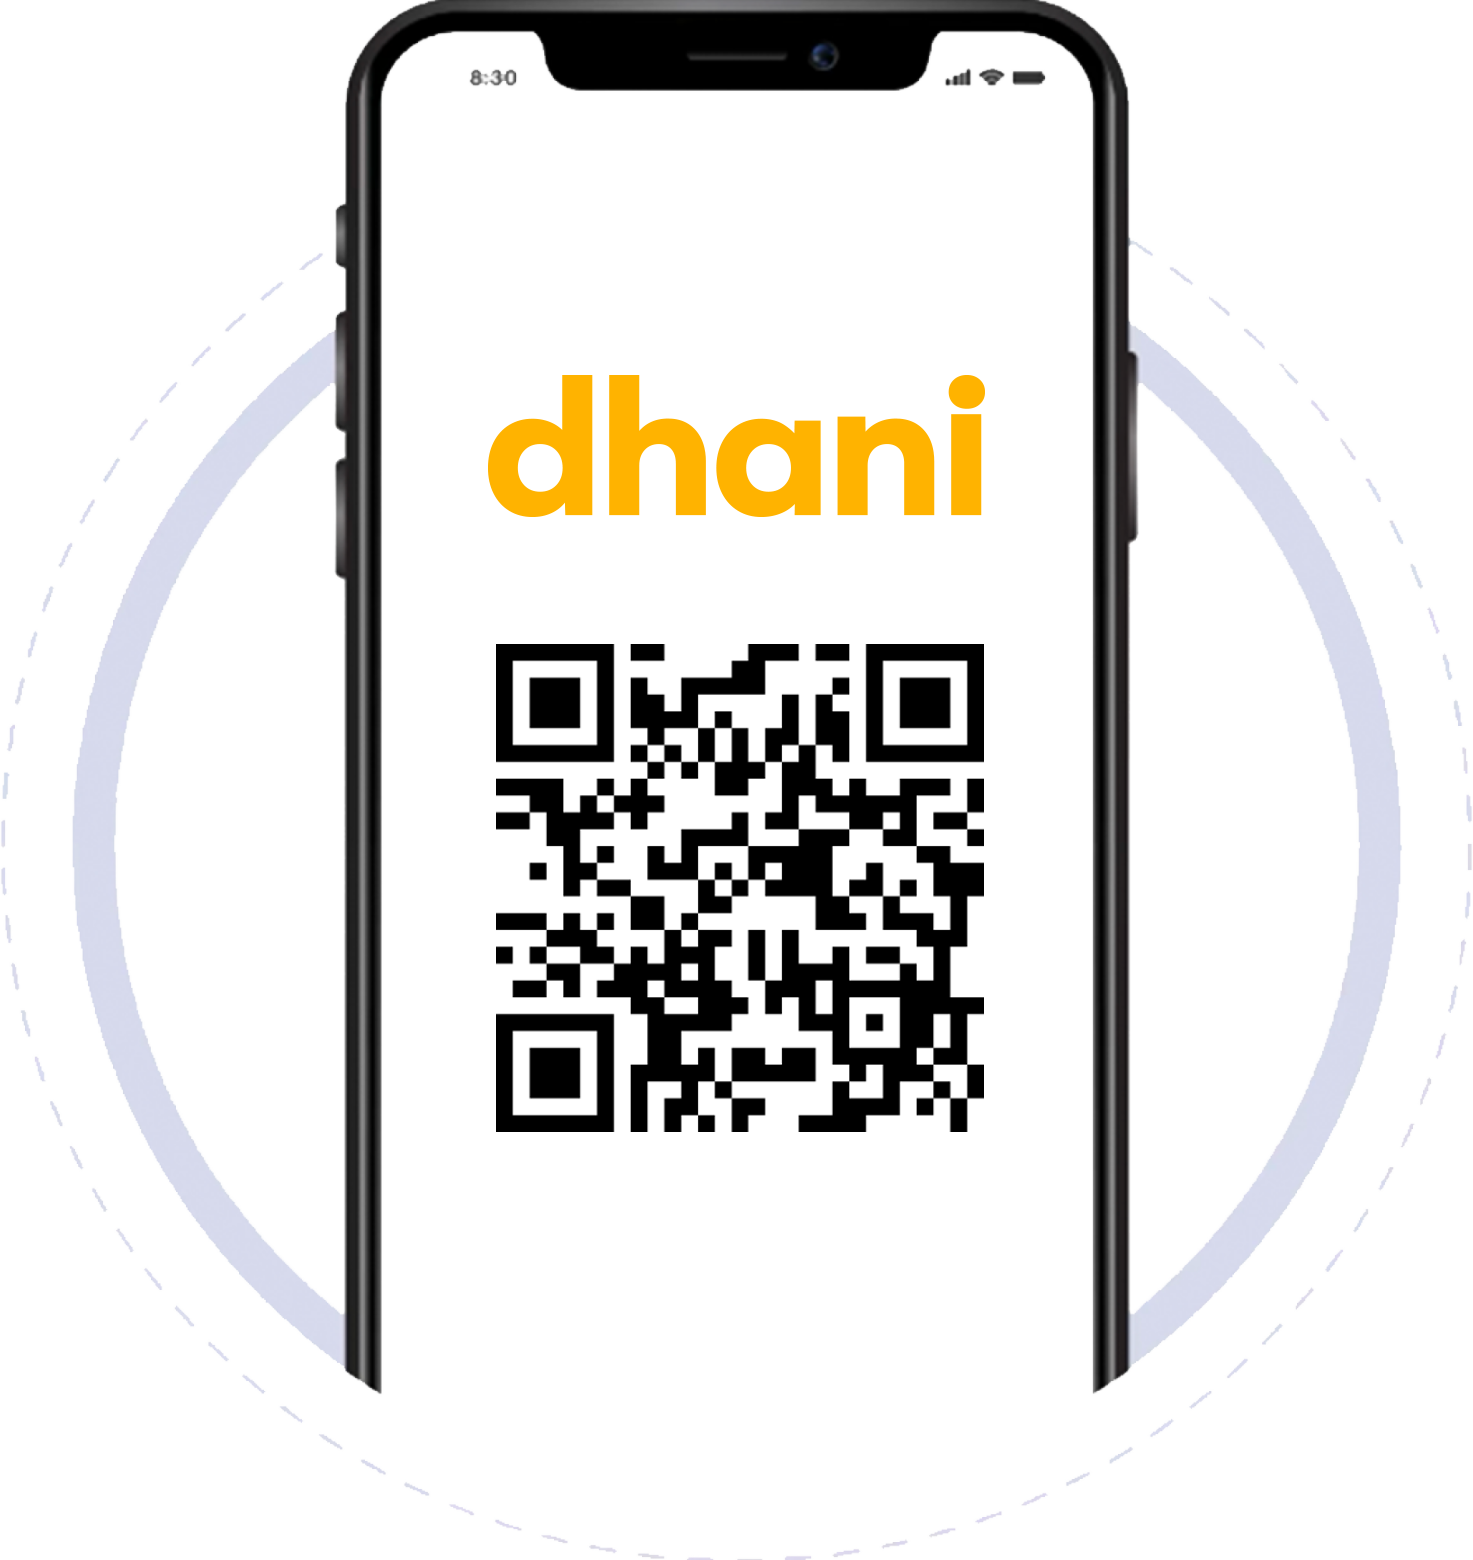 newphone-dhani